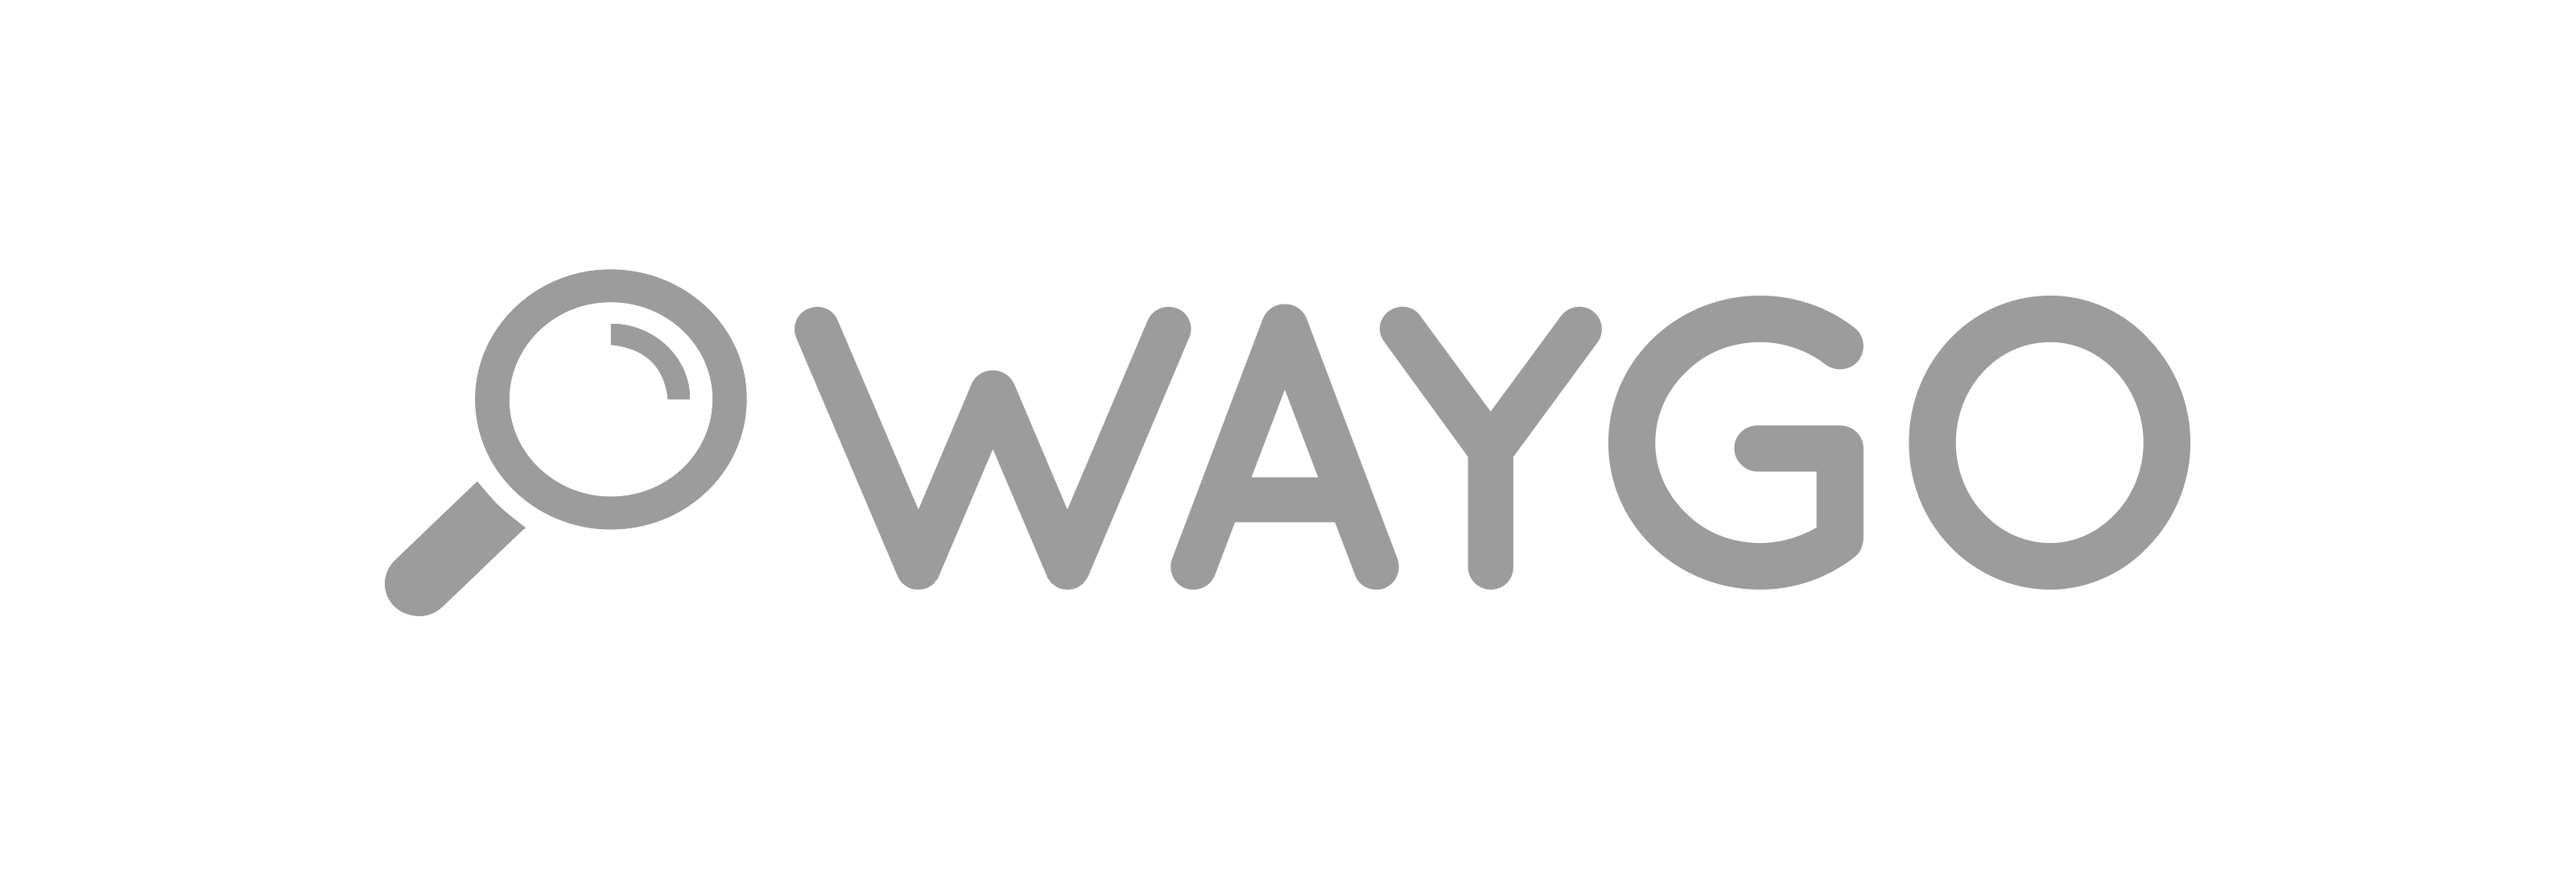 Waygo logo grayscale